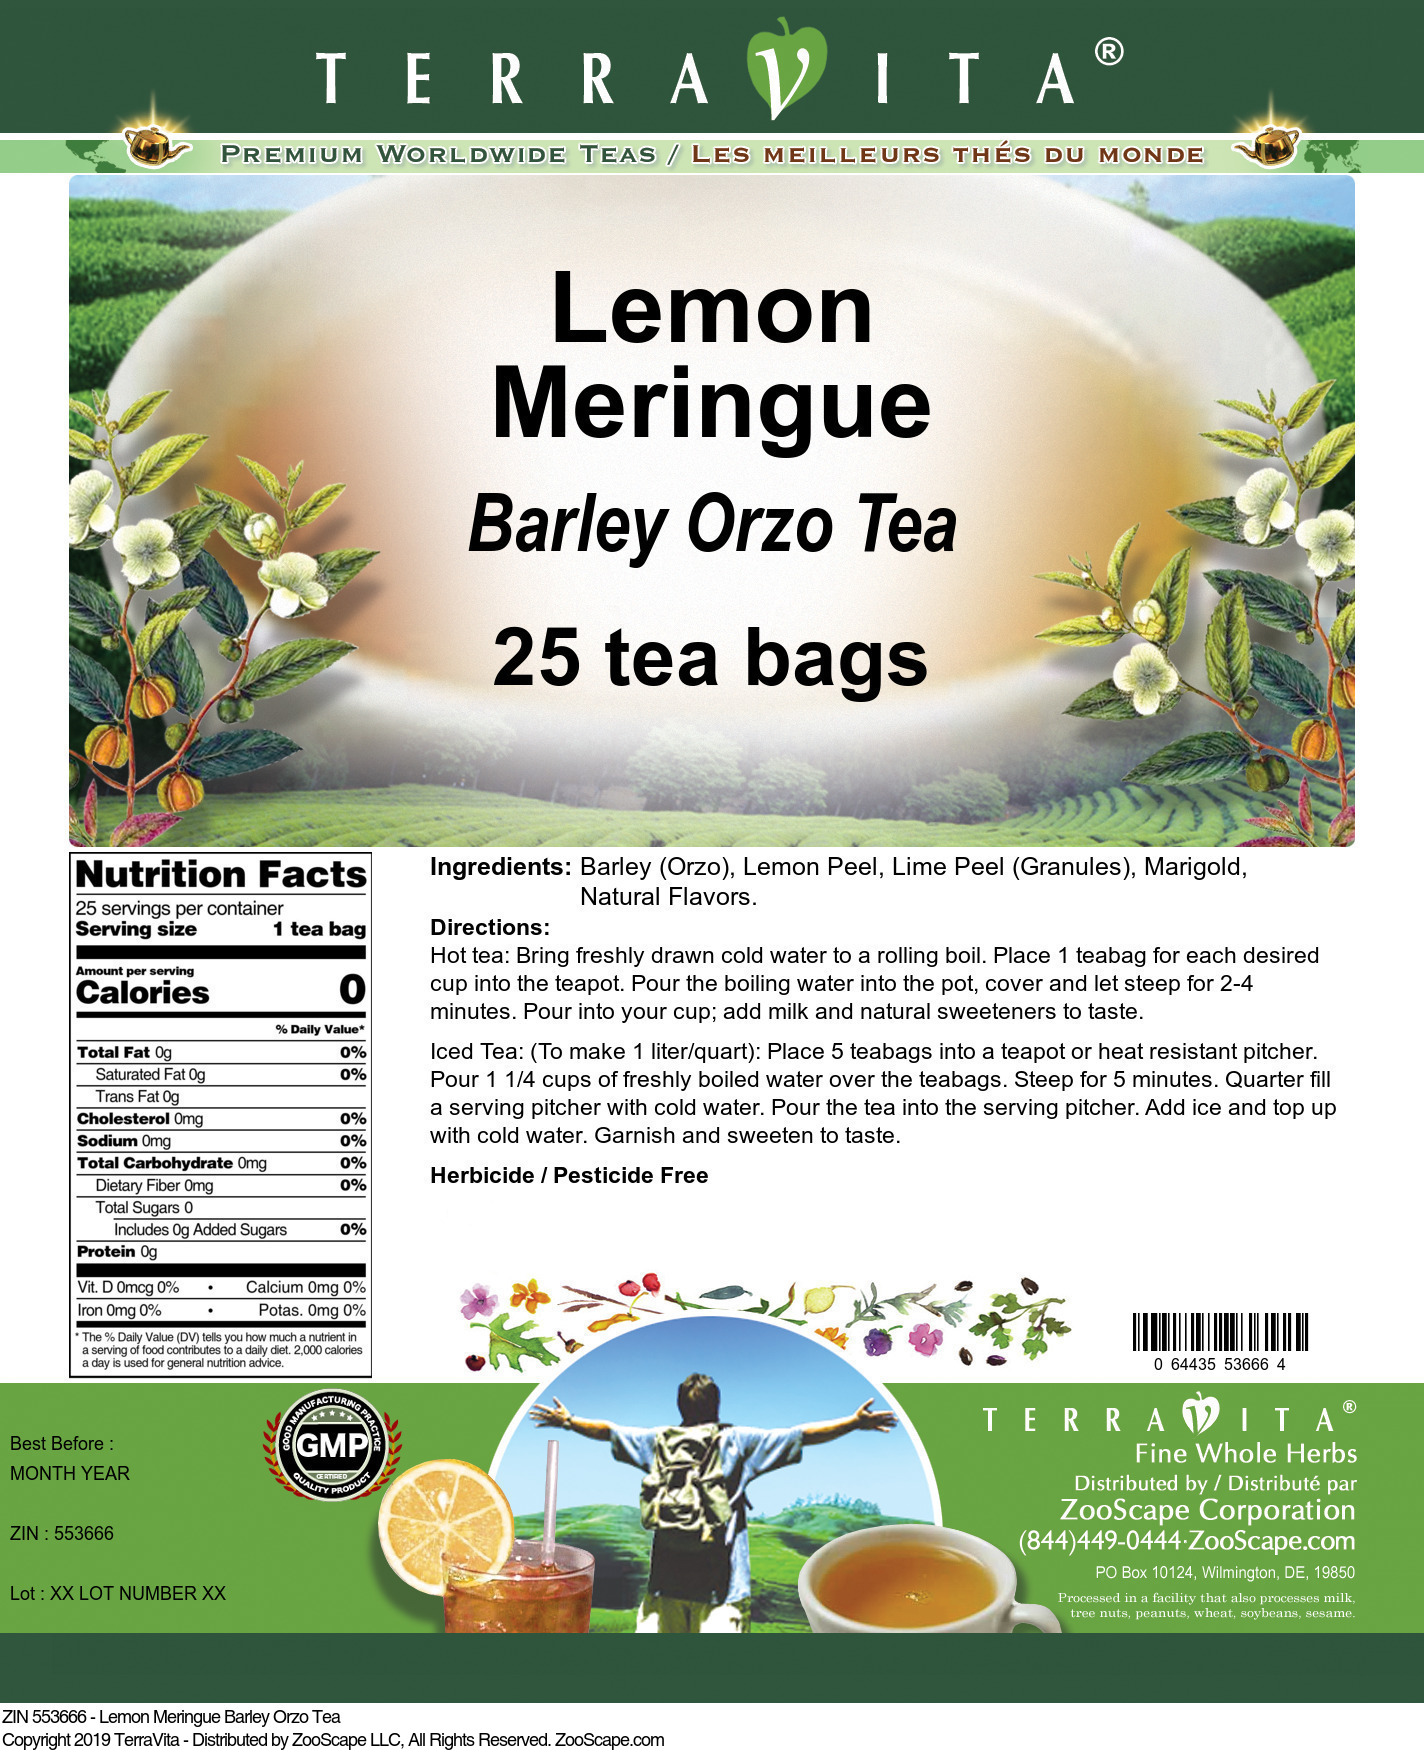 Lemon Meringue Barley Orzo Tea - Label